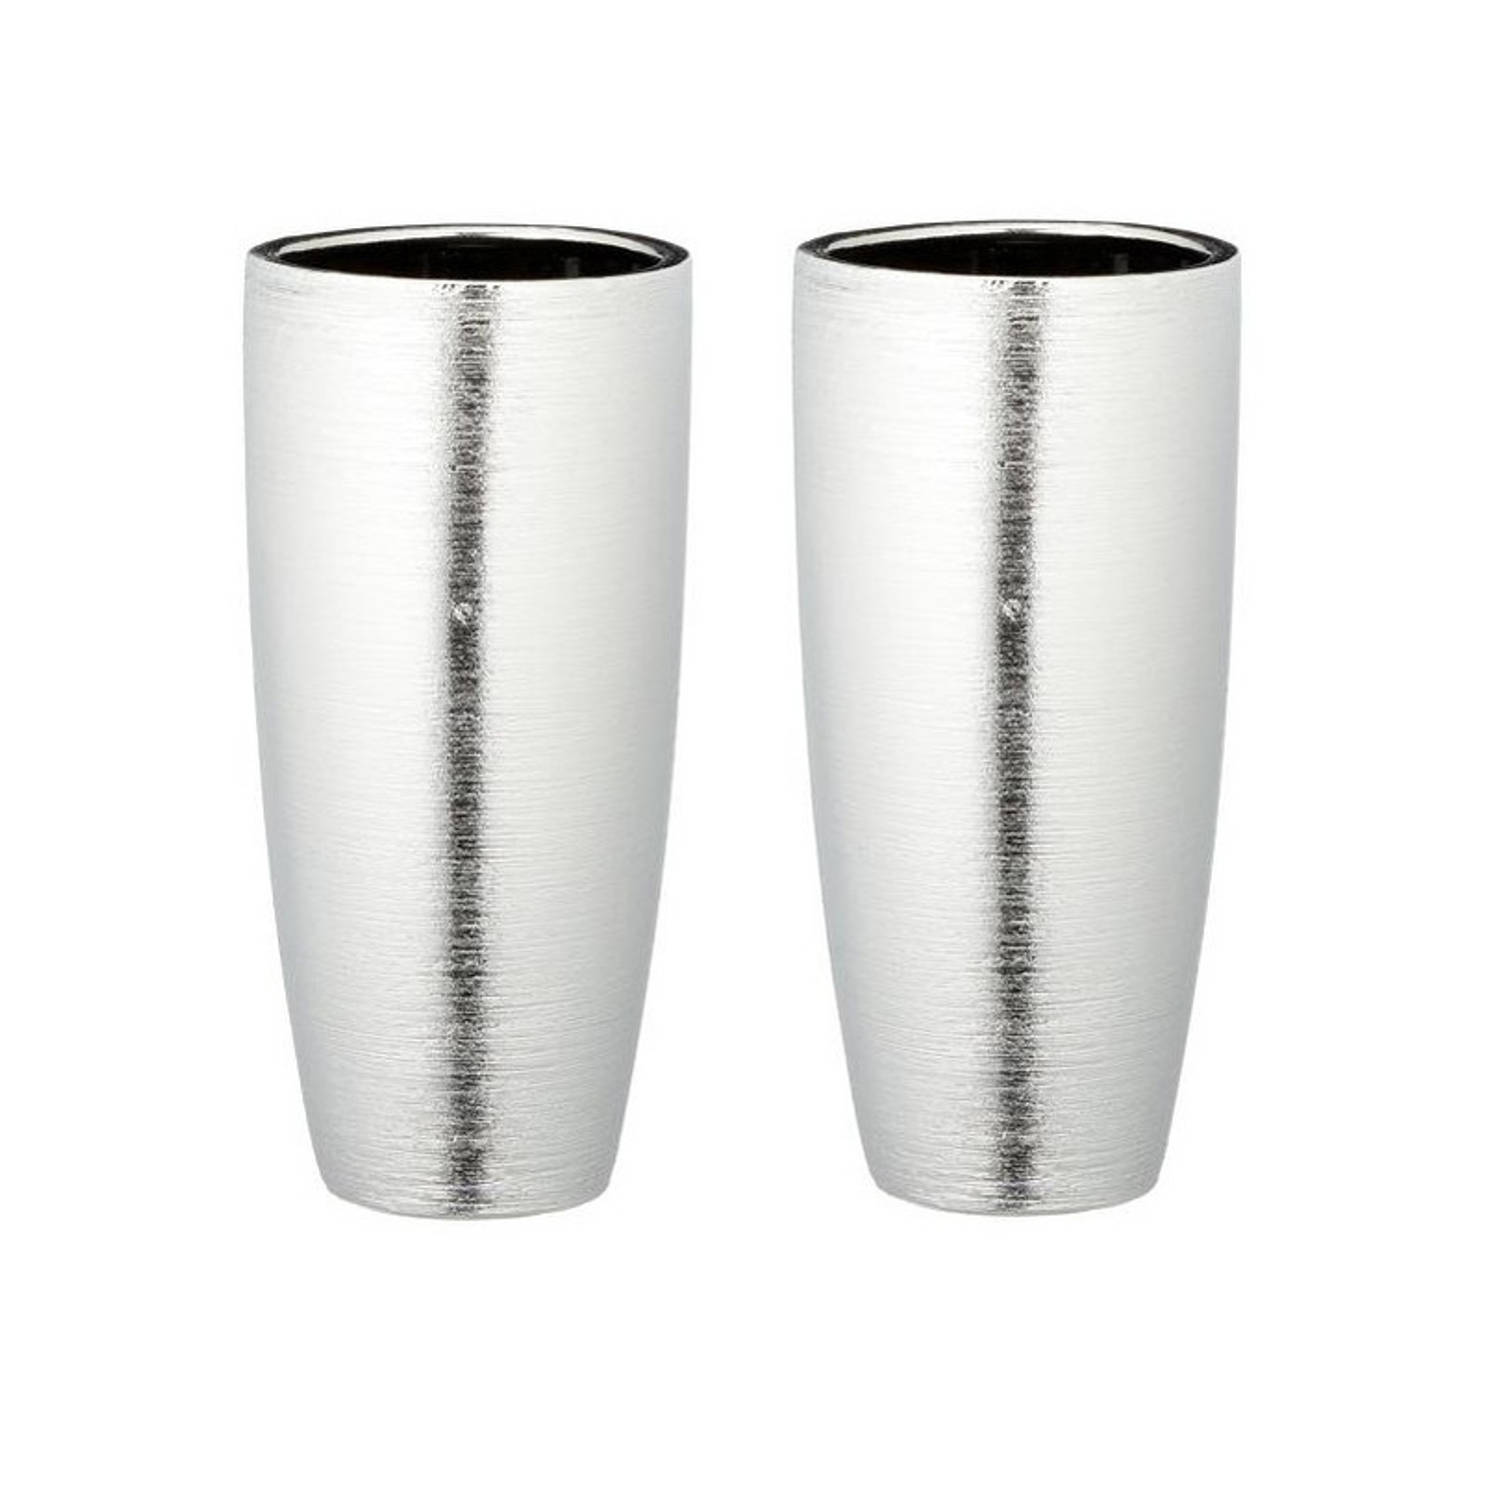 Opiaat salaris Insecten tellen Set van 2x stuks ronde matte zilveren vaas/vazen van keramiek 28 x 13,5 cm  - Vazen | Blokker